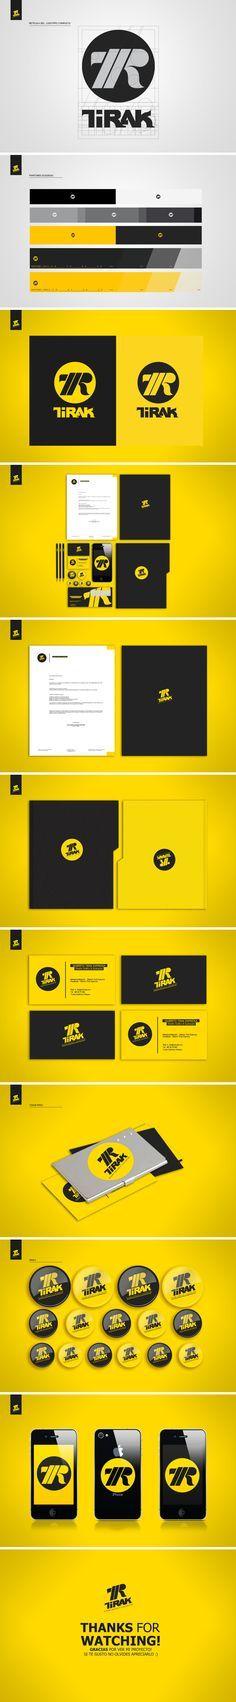 Black Yellow Brand Logo - Best Black & Yellow Branding image. Branding design